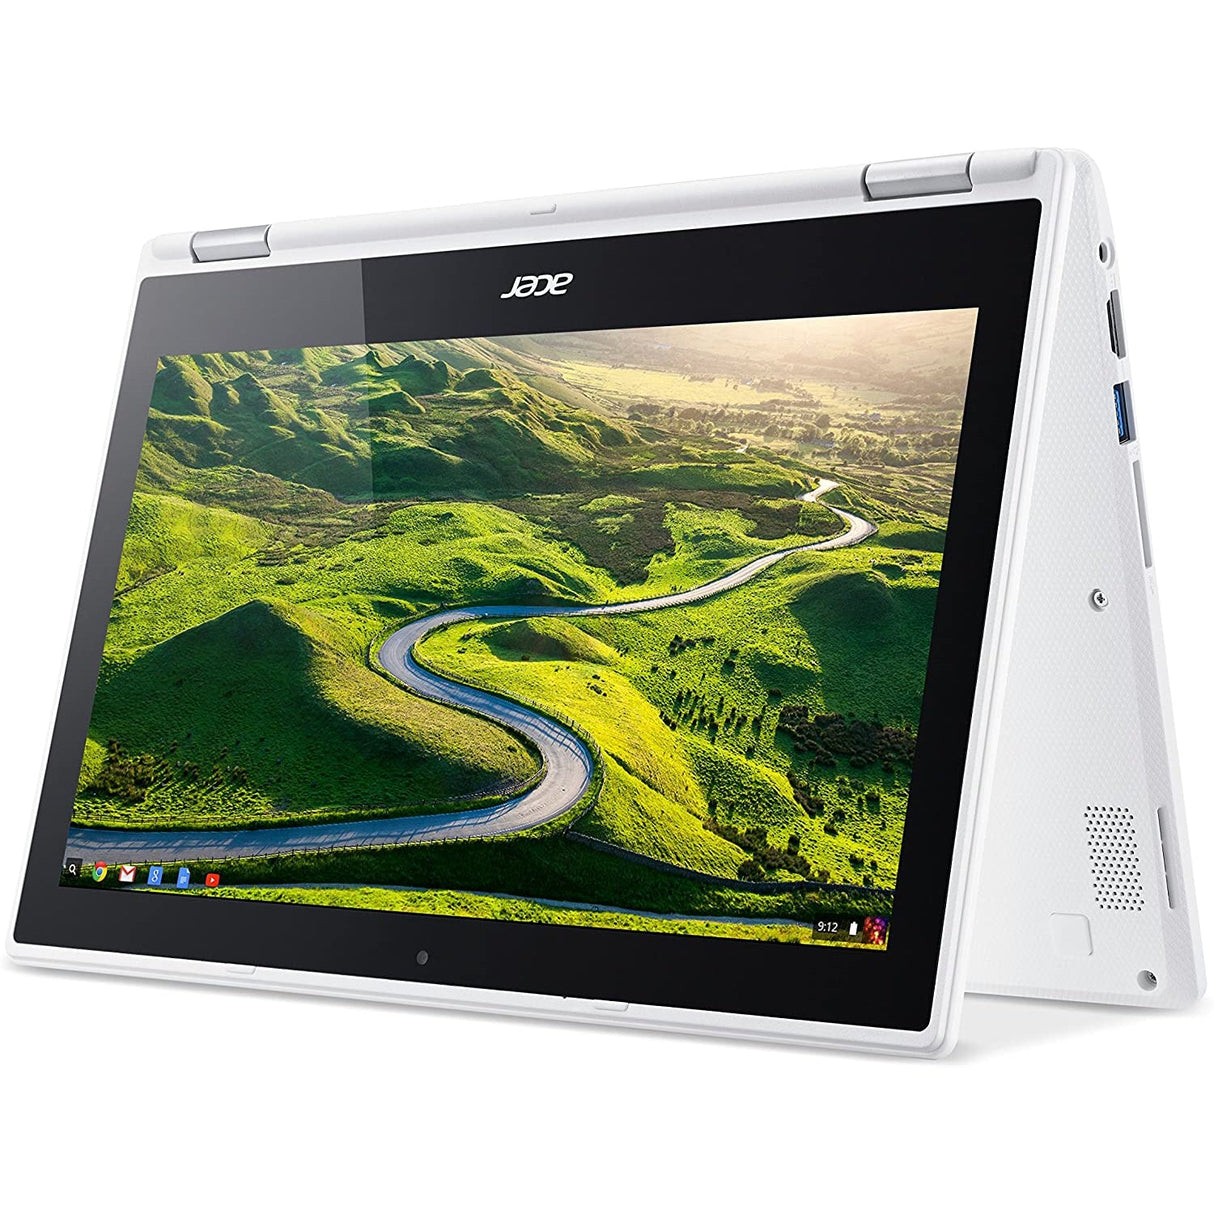 Acer CB5-132T 11.6" Laptop, Intel Celeron, 2GB RAM, 32GB eMMC, White - Refurbished Good